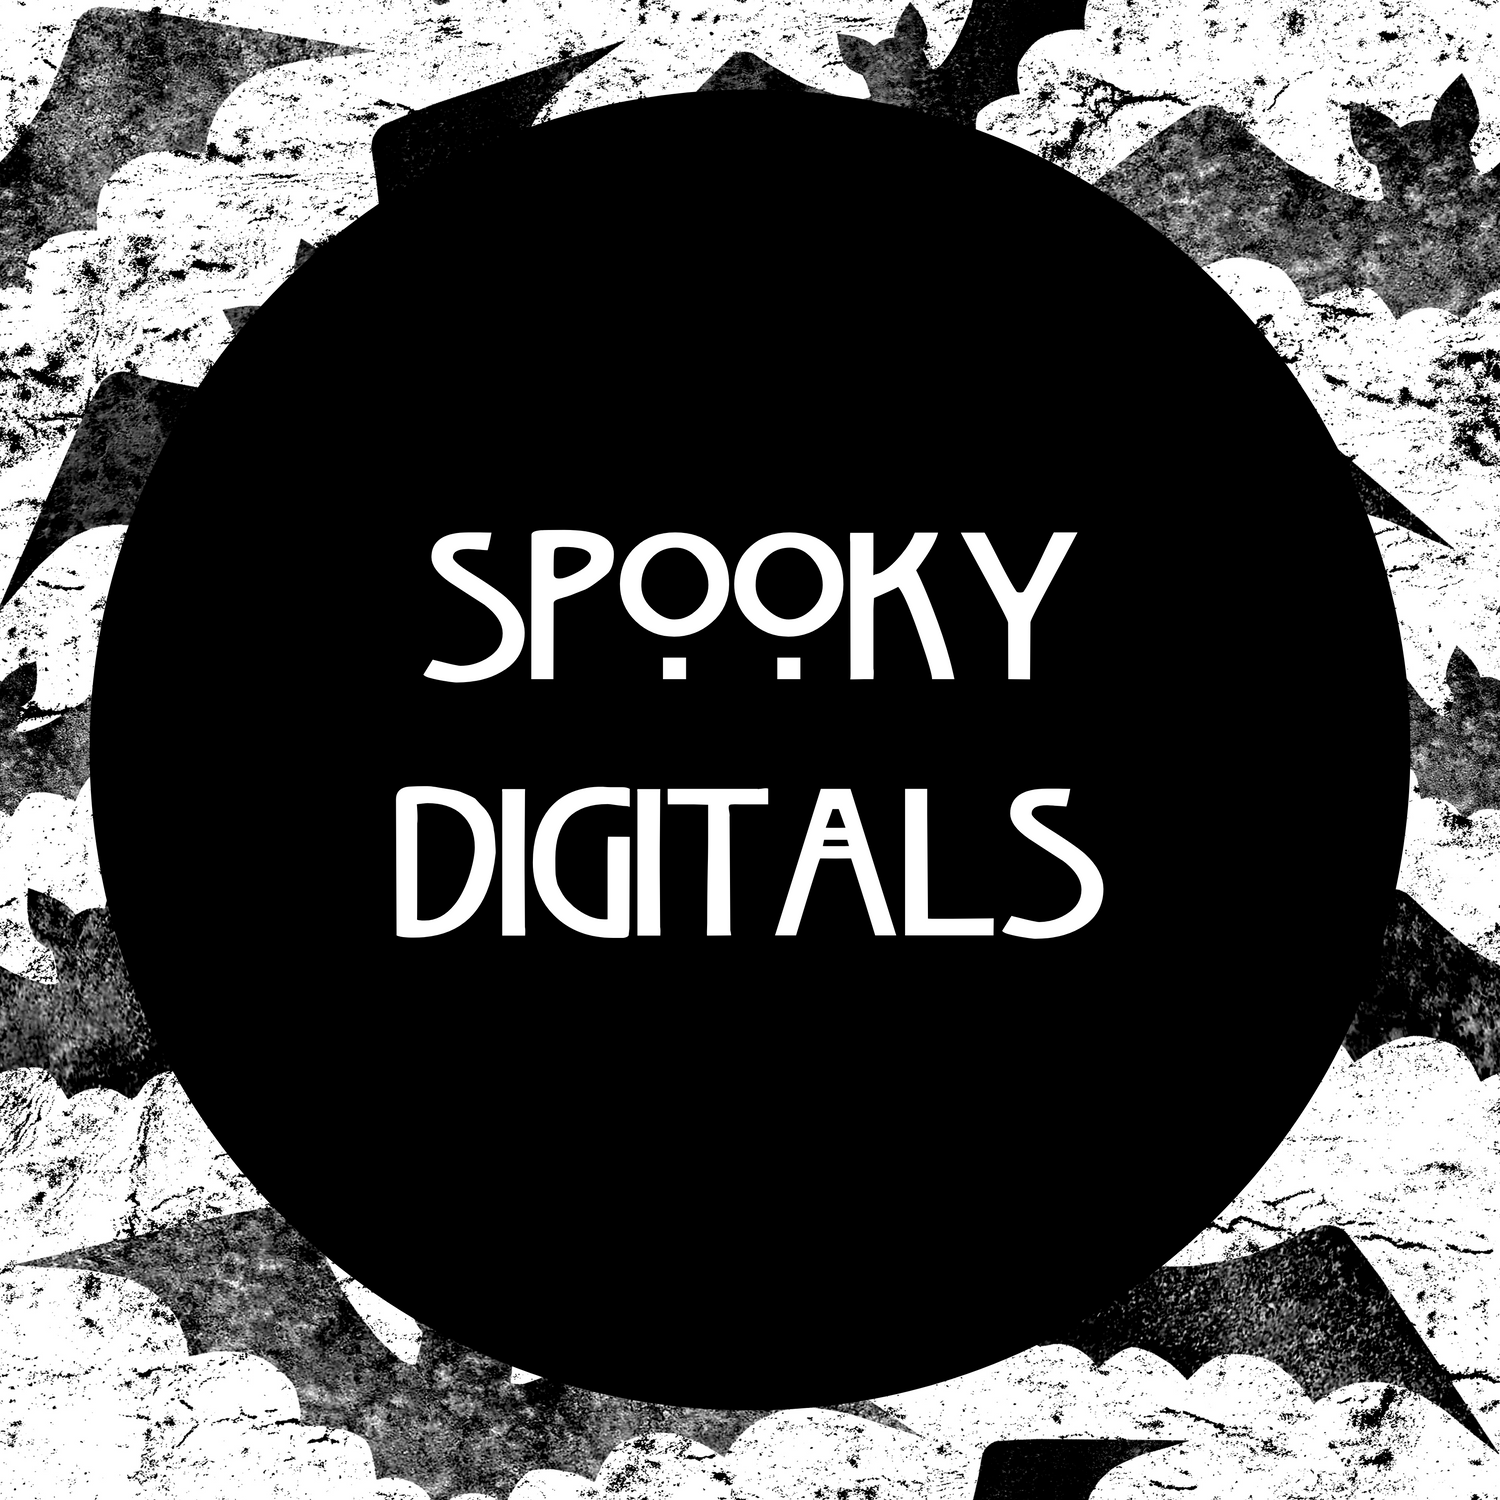 Spooky Digitals